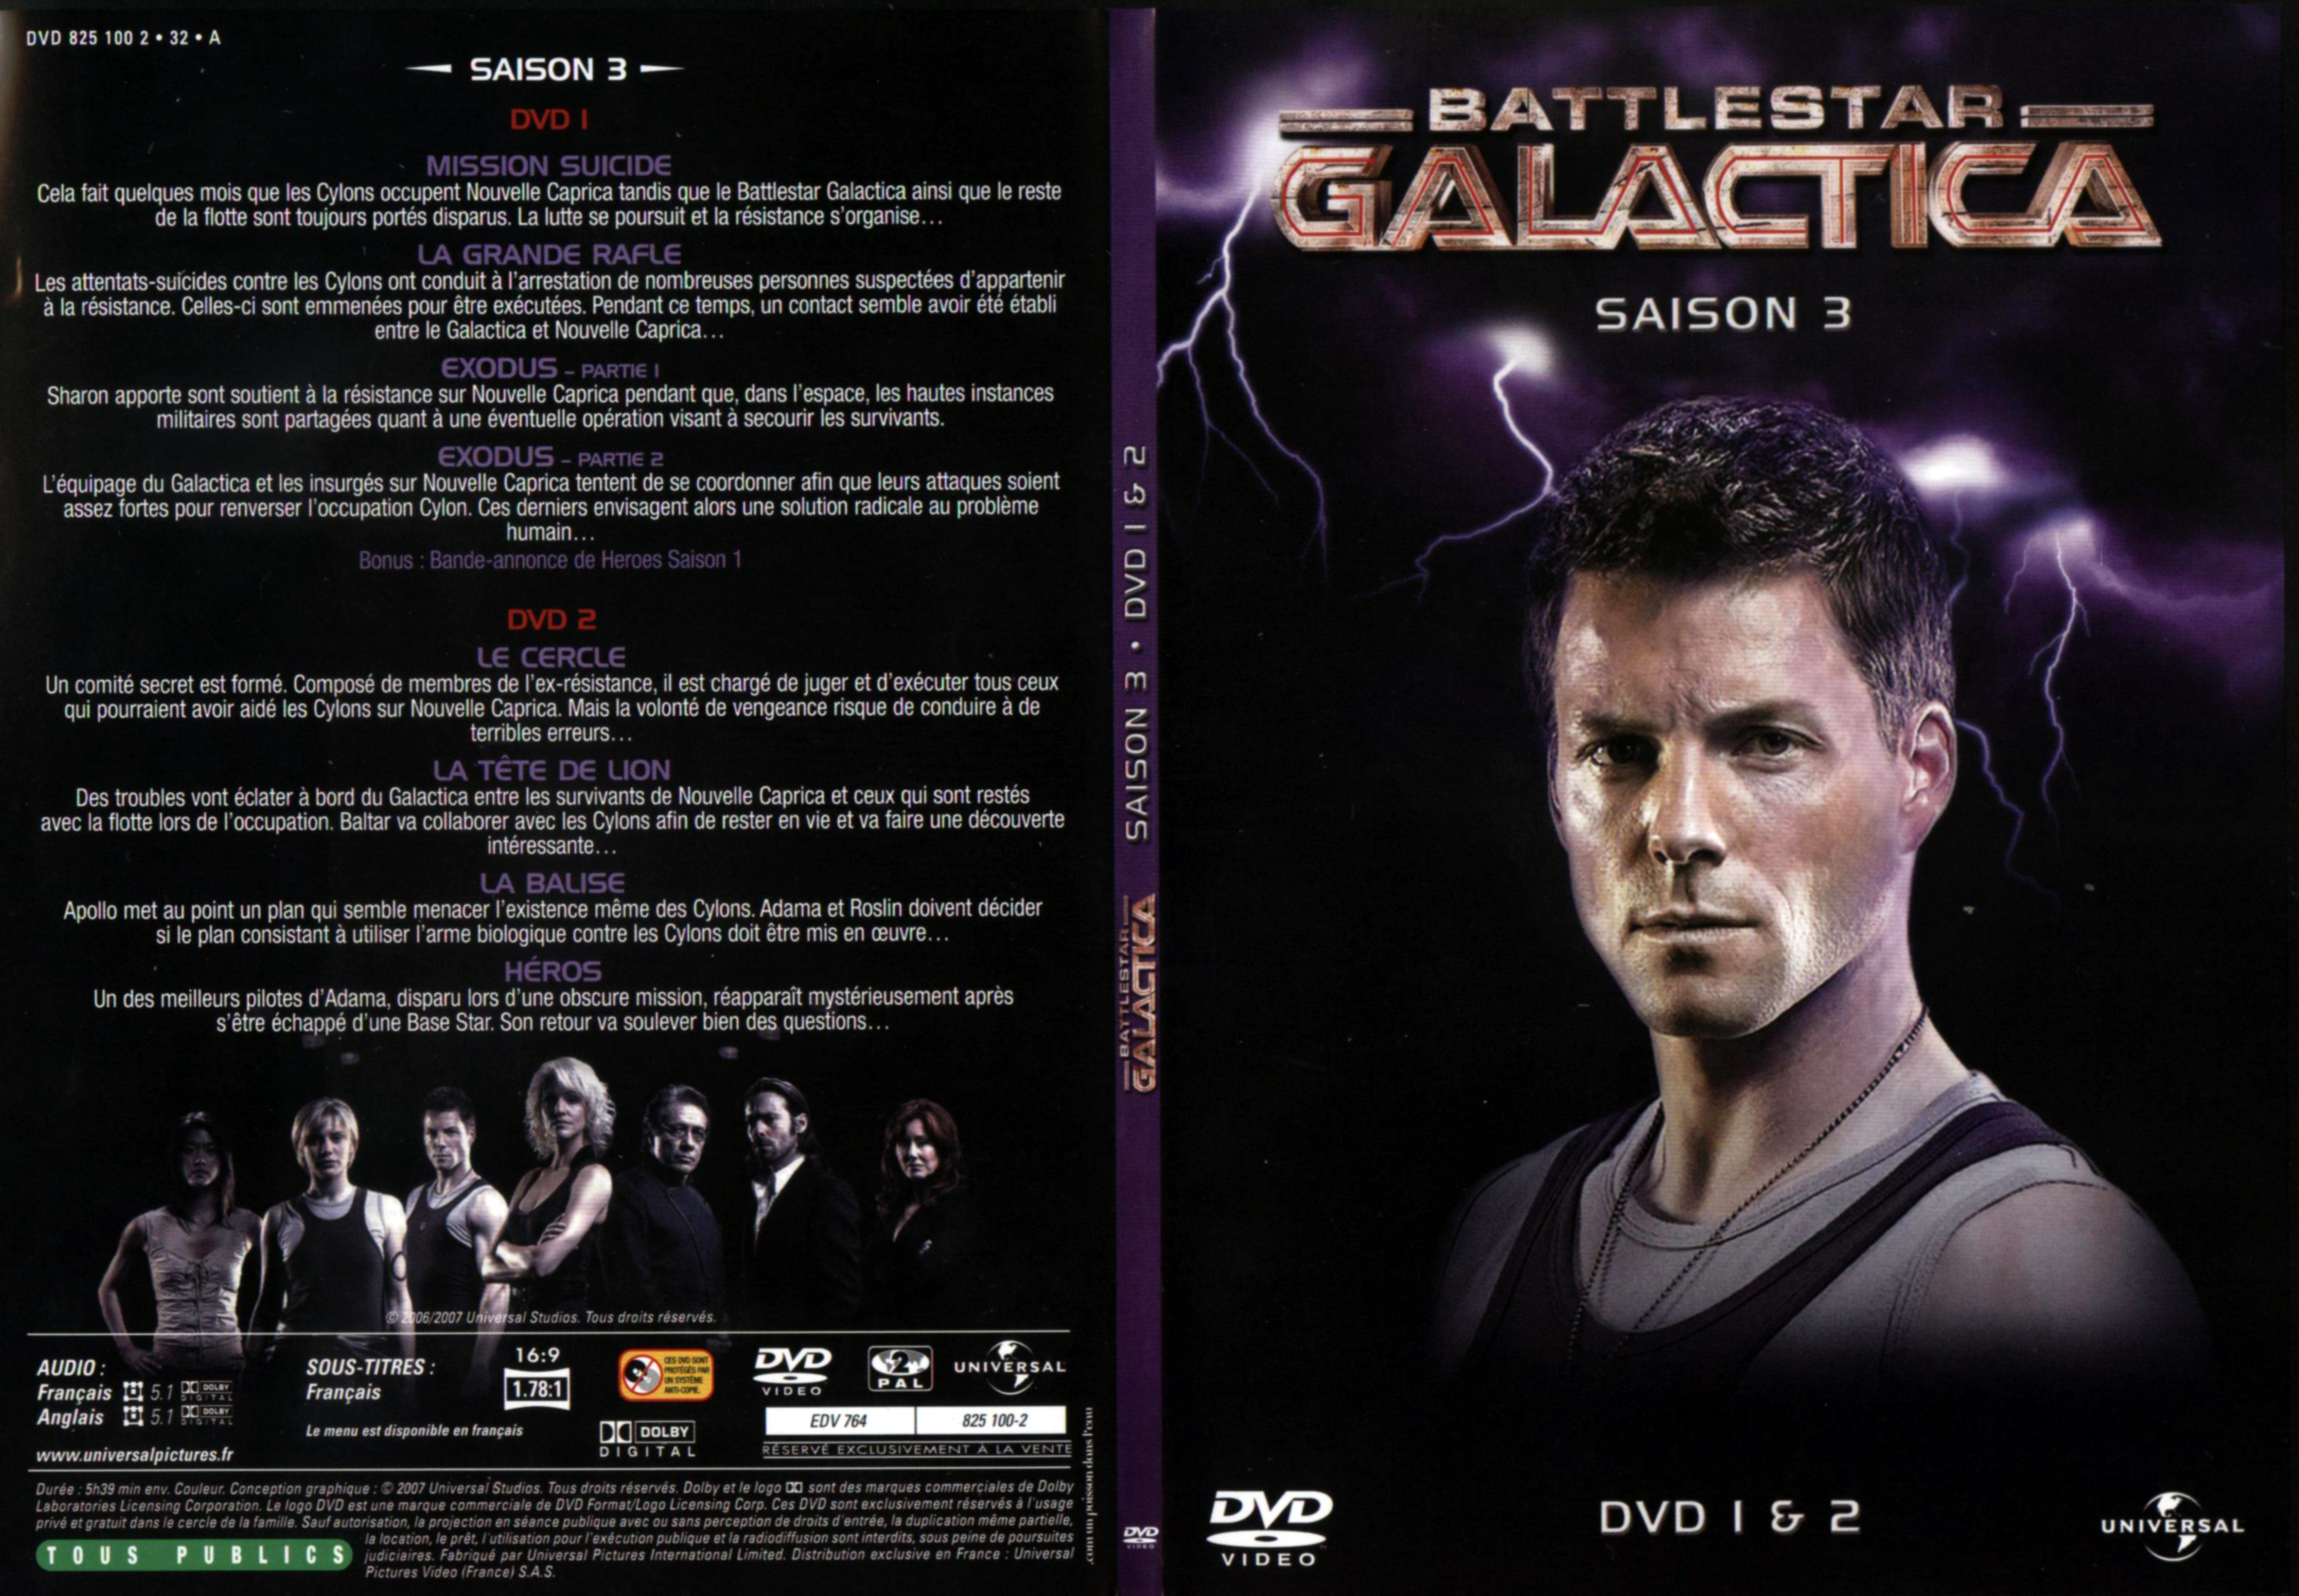 Jaquette DVD Battlestar Galactica Saison 3 DVD 1